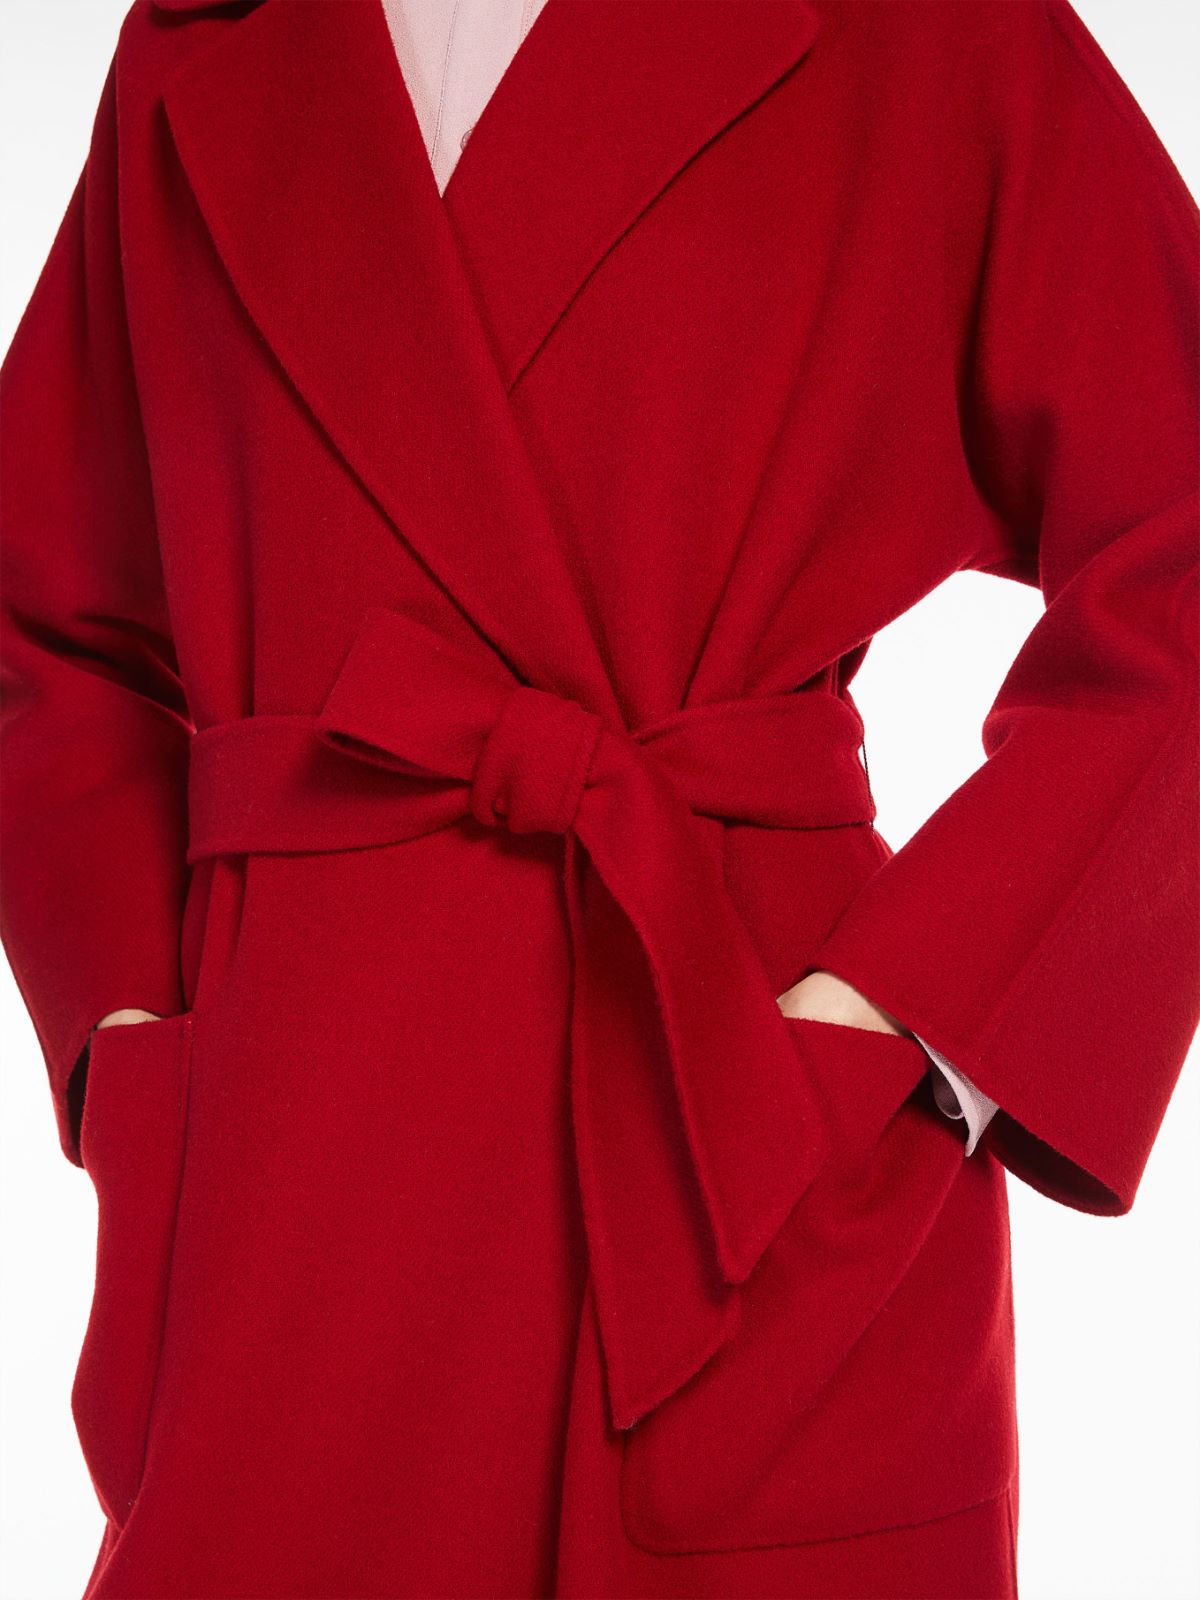 Wool coat - RED - Weekend Max Mara - 4